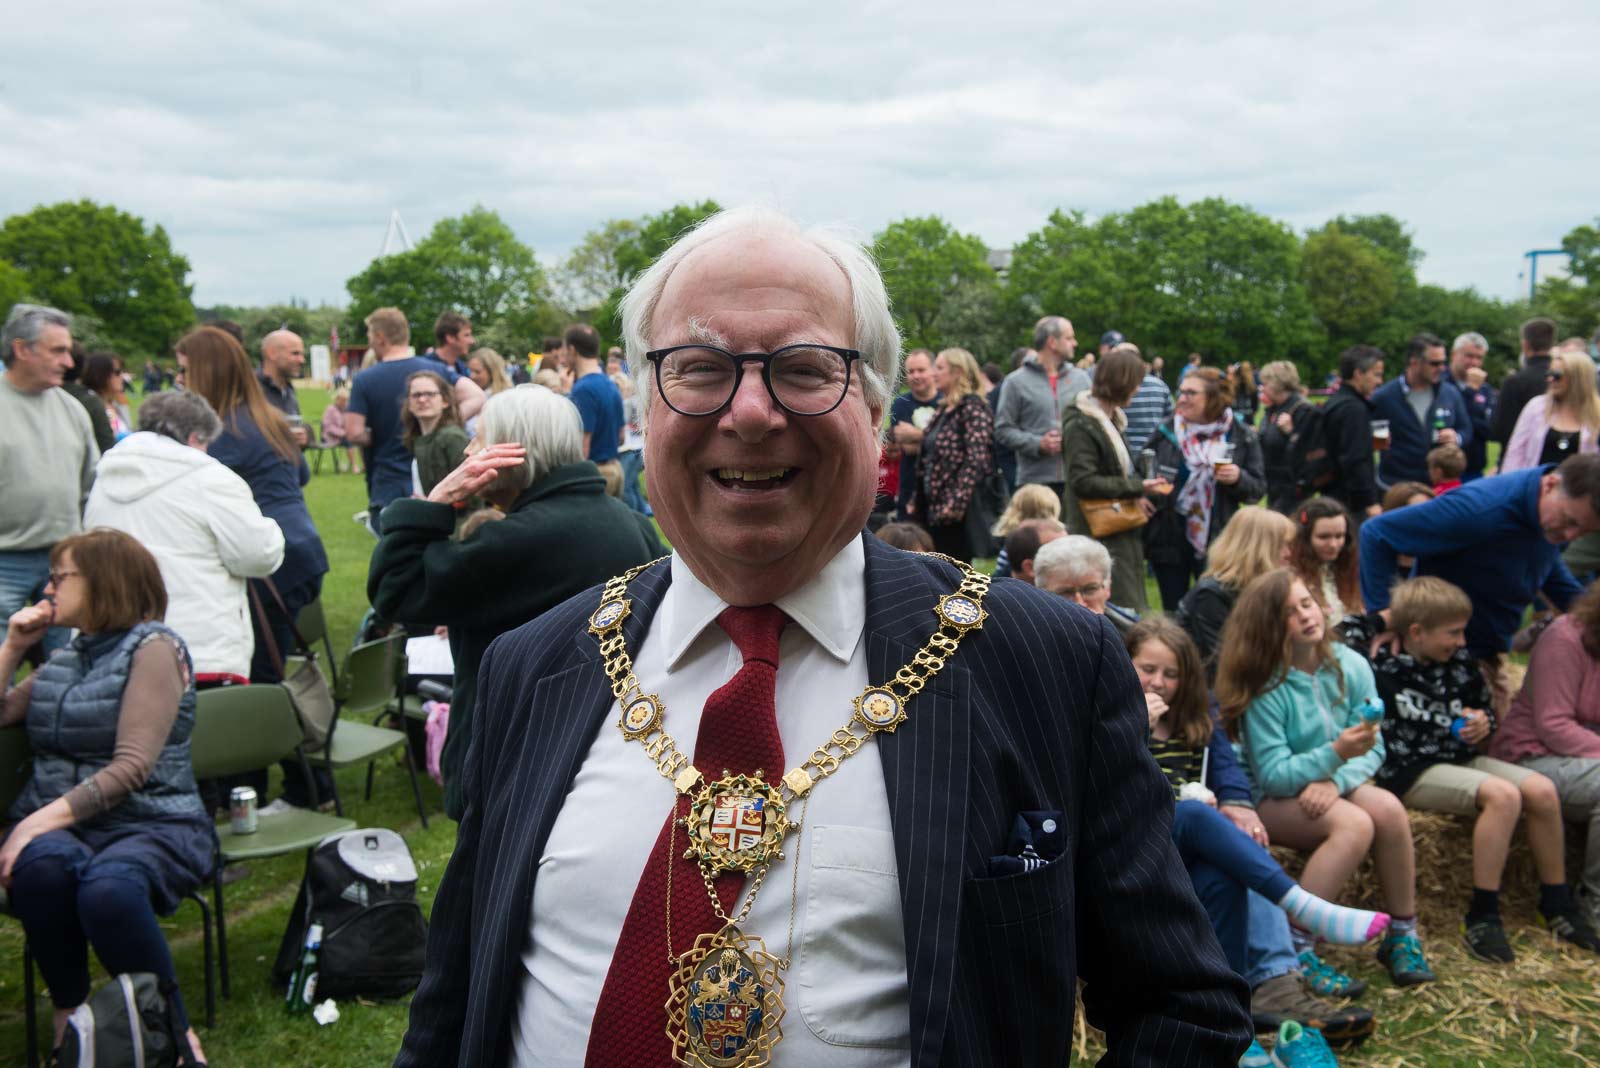 The Mayor of Harrogate, Cllr Nick Brown